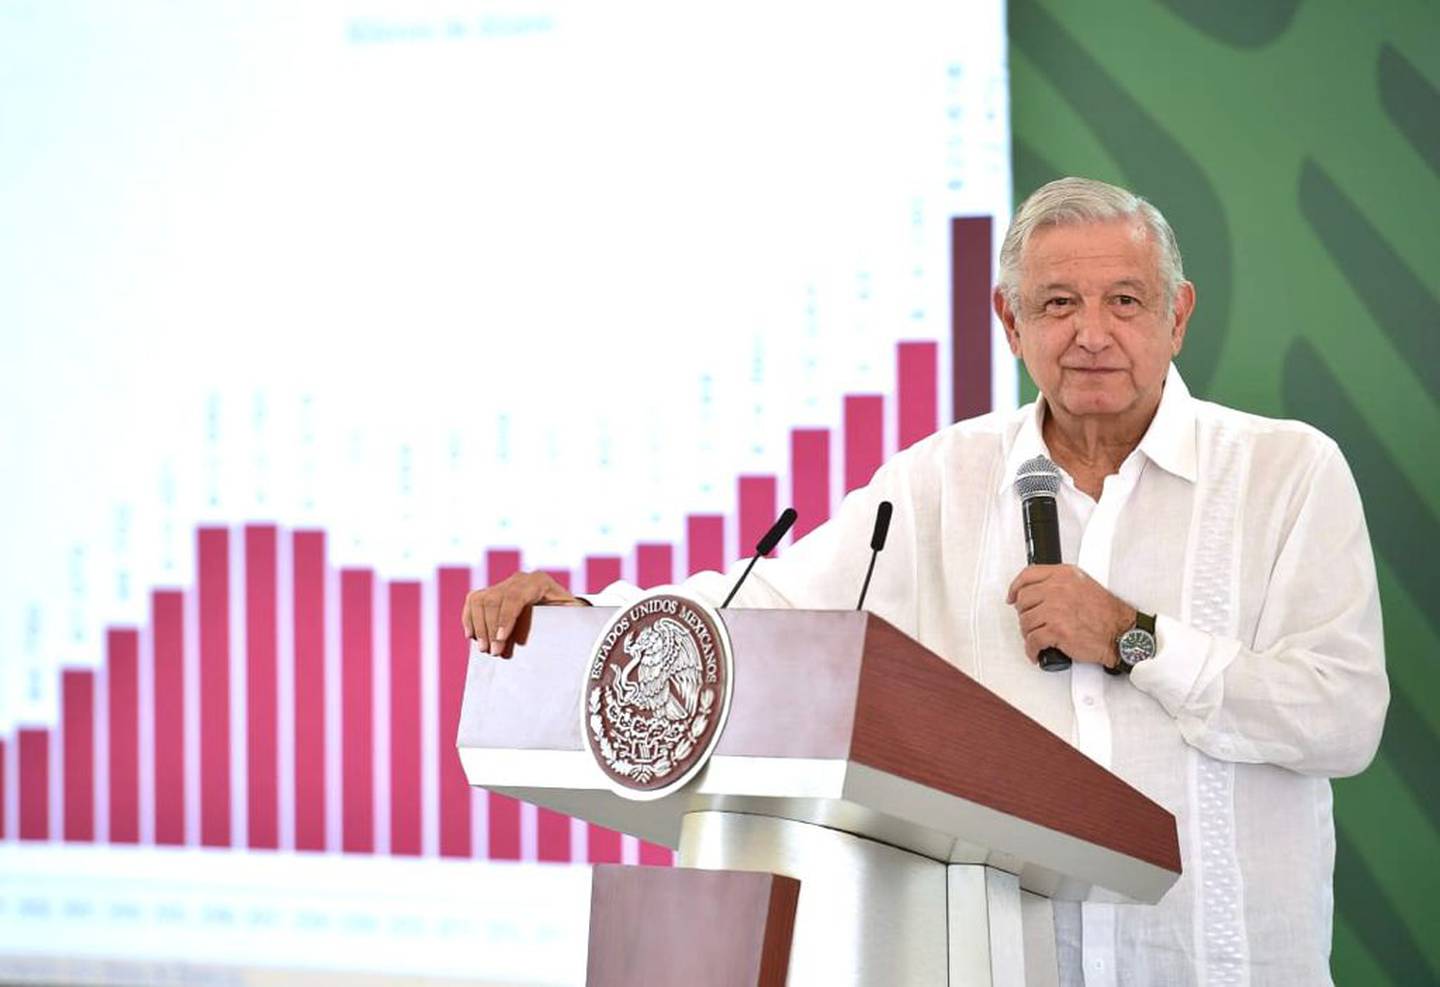 El presidente, conocido como AMLO, destacó los incrementos en la recaudación de su Gobierno en 2021.